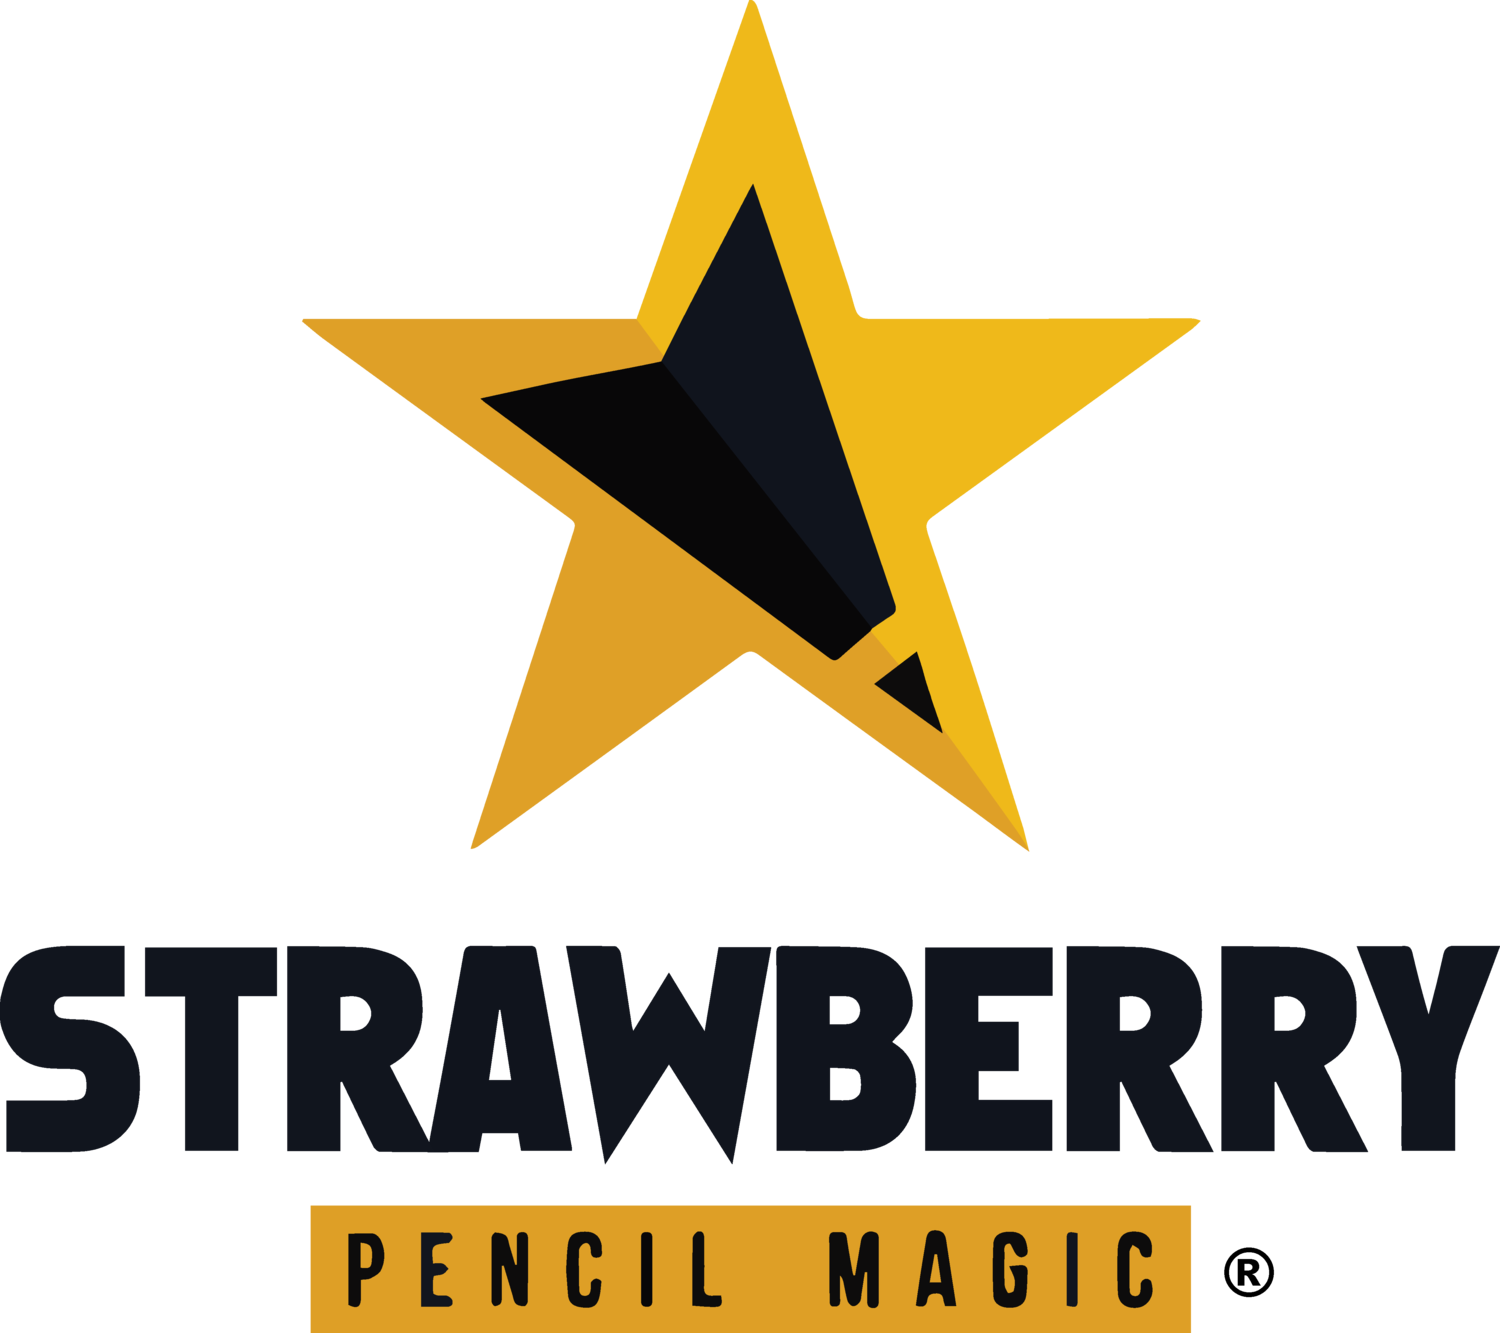 Strawberry Pencil Magic